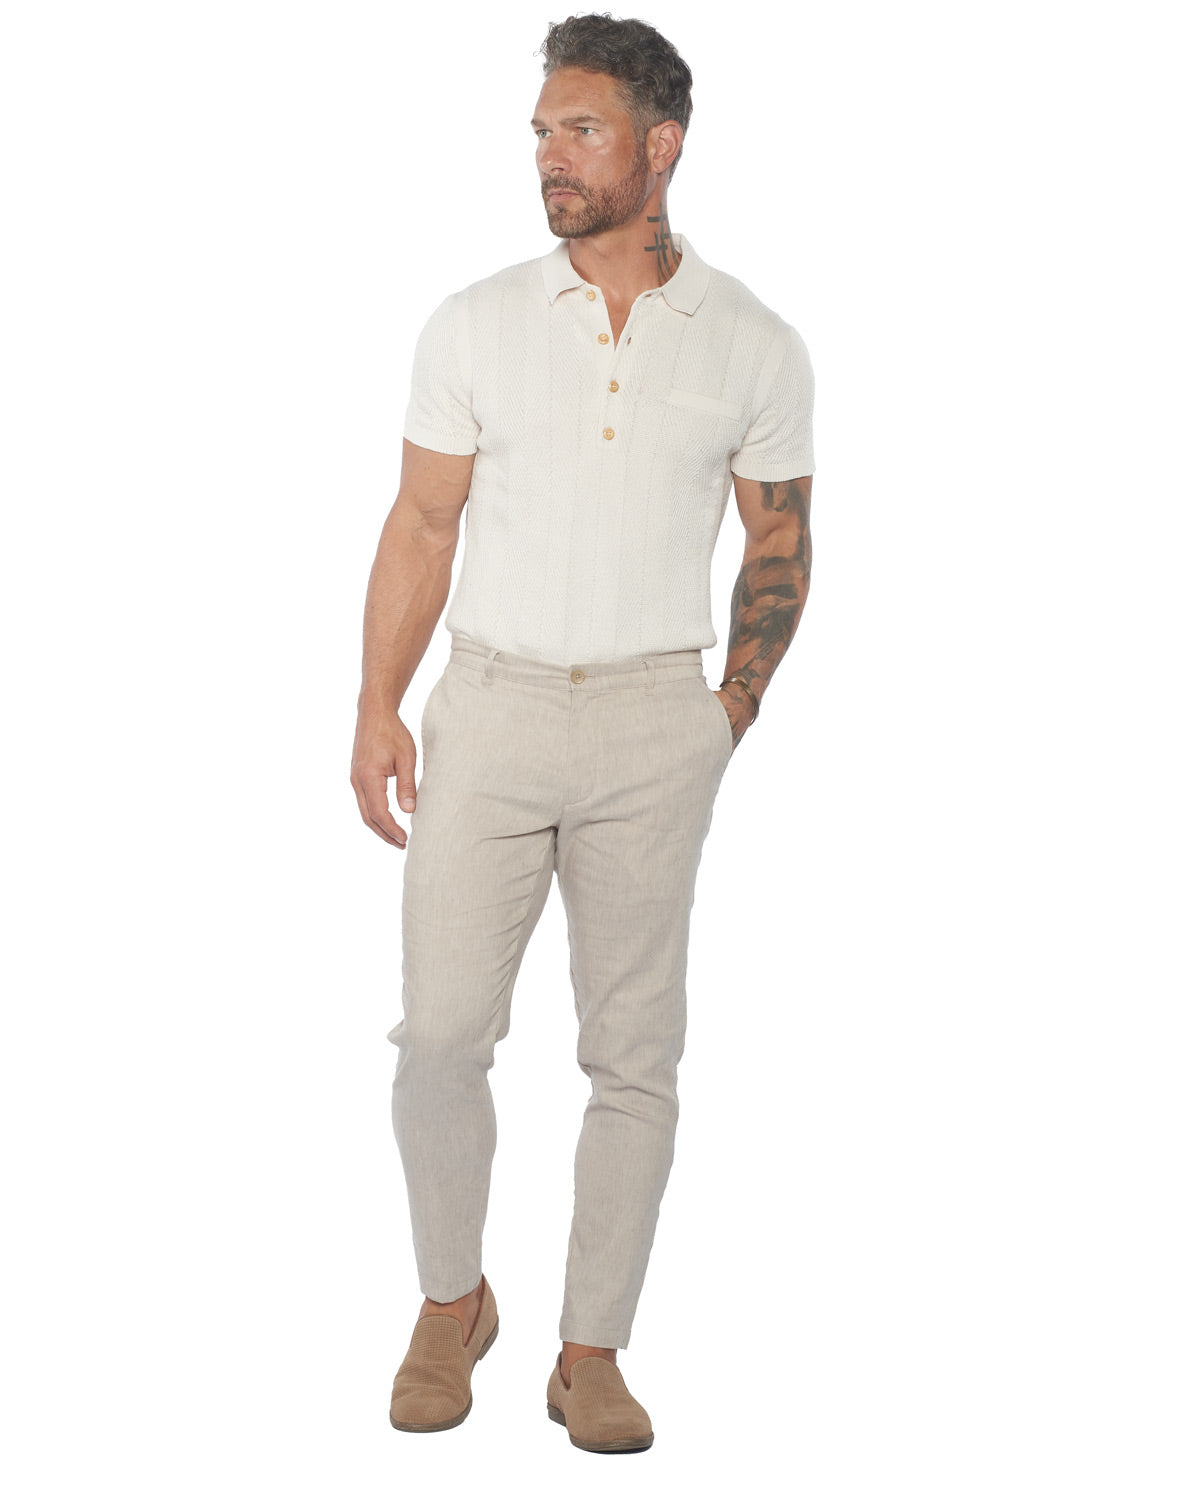 The Havana Comfort Linen Slim Pants